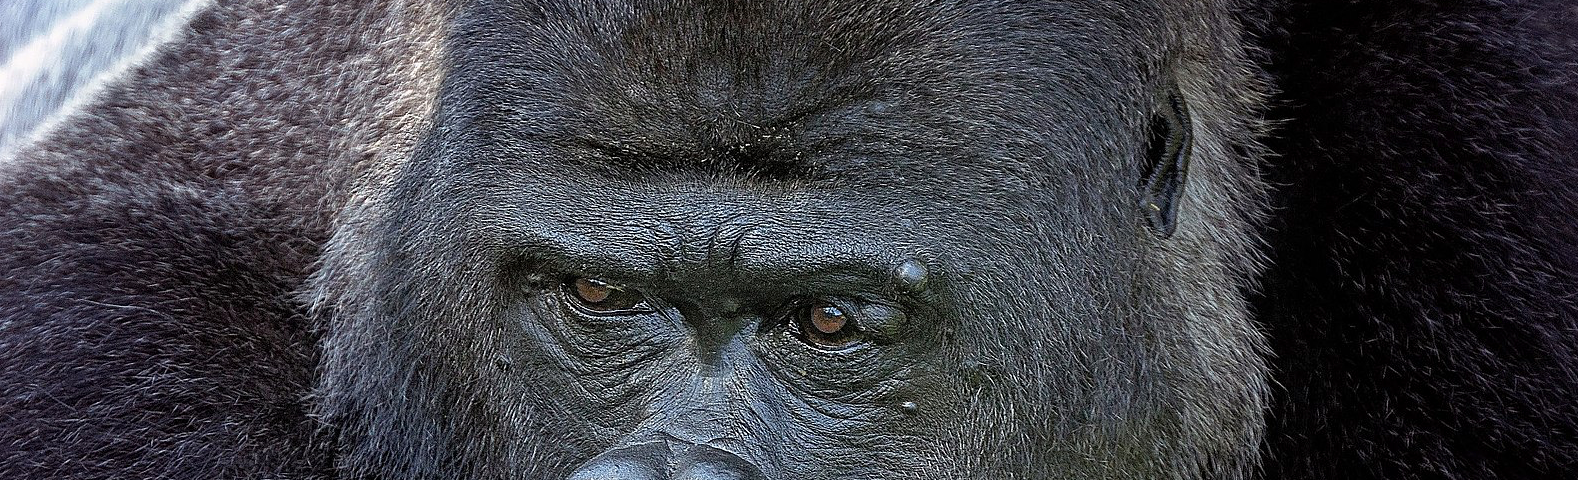 Head shot of a male silverback gorilla.